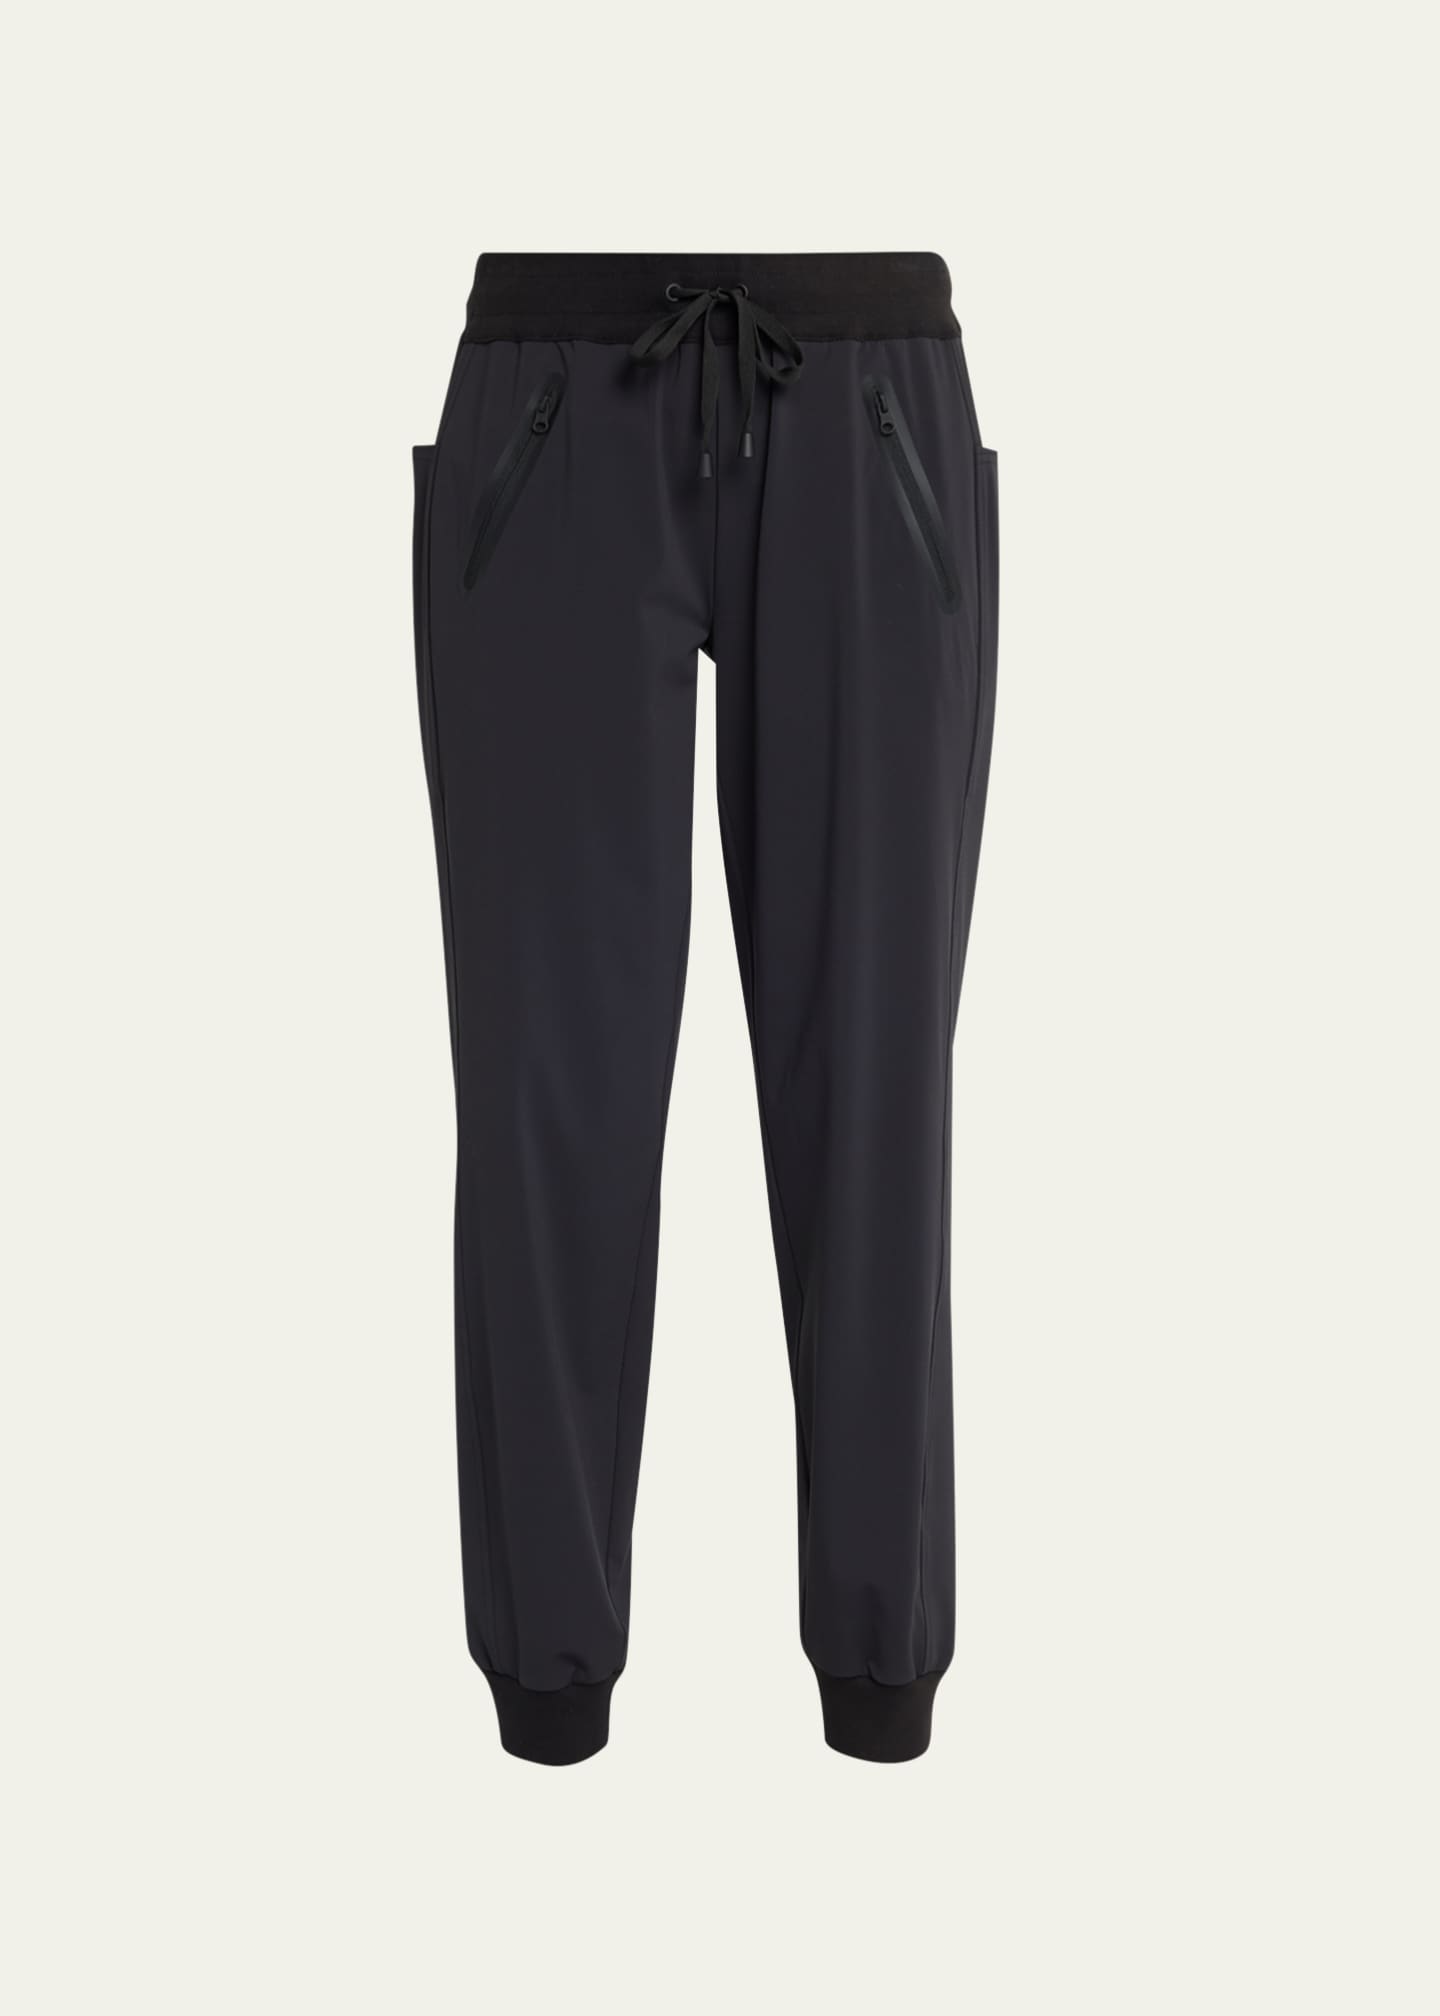 LULULEMON Noir Pant Black {M25}  Black pants, Clothes design